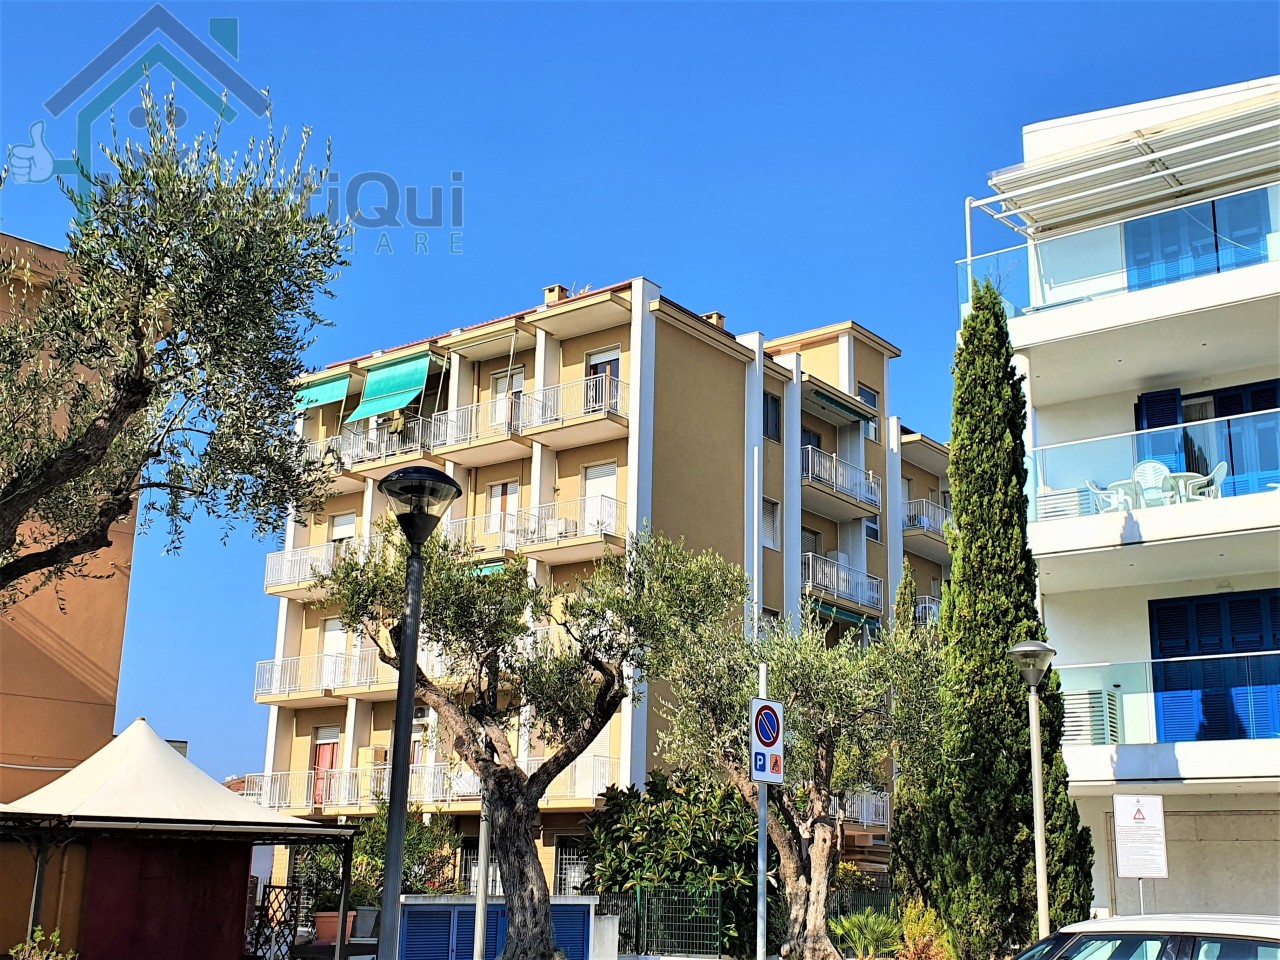 Appartamento in vendita a Pietra Ligure, 2 locali, prezzo € 189.000 | PortaleAgenzieImmobiliari.it